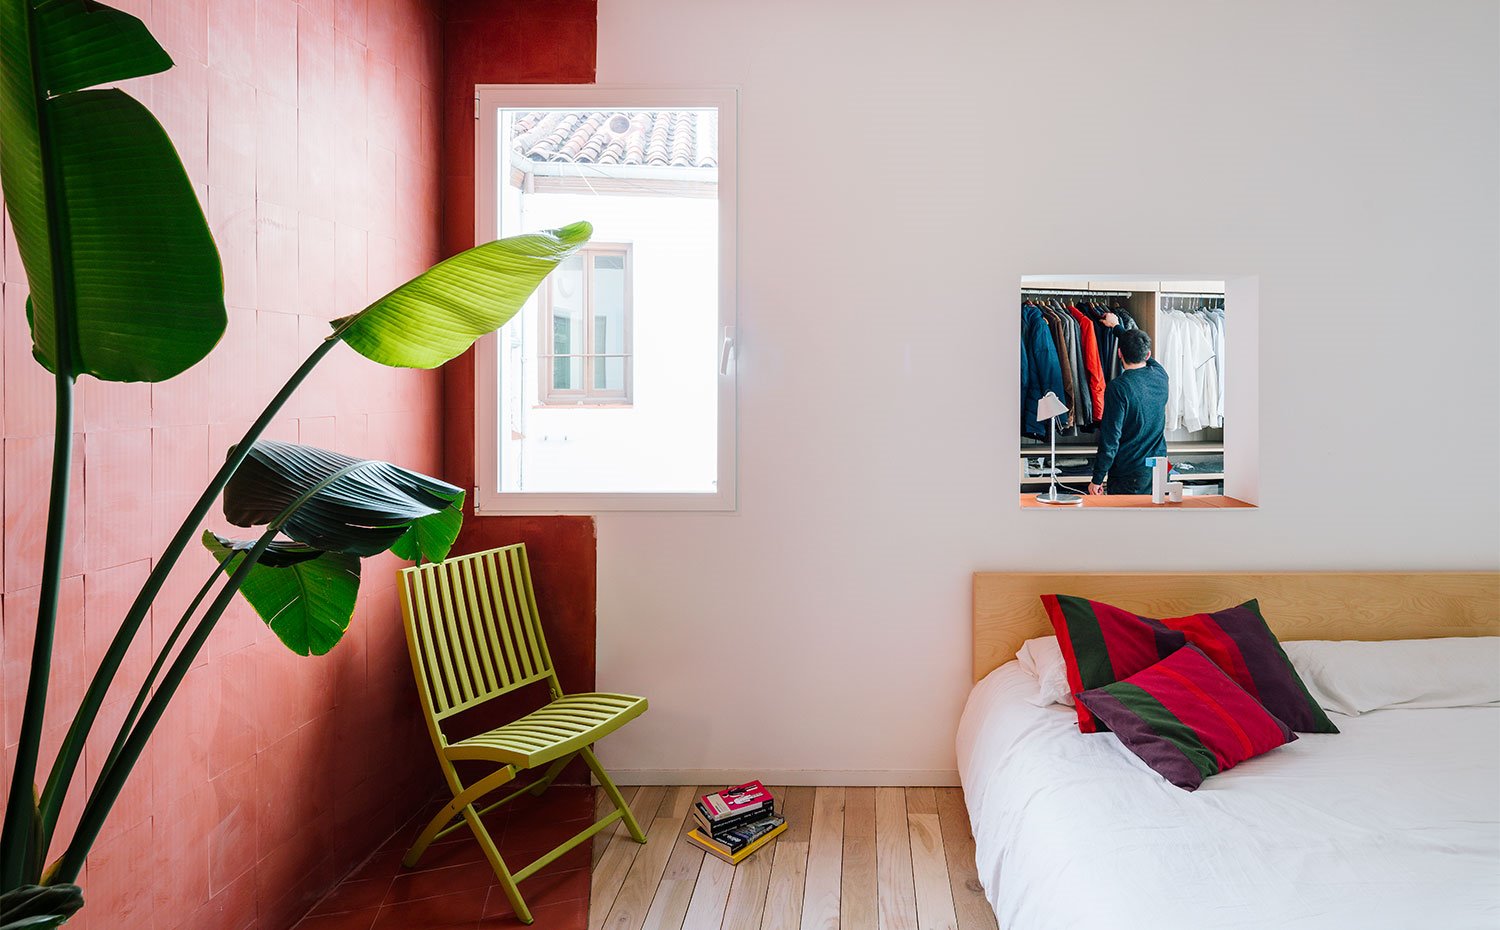 Dormitorio con hueco en pared hacia vestidor, silla en verde, pared en tonos teja